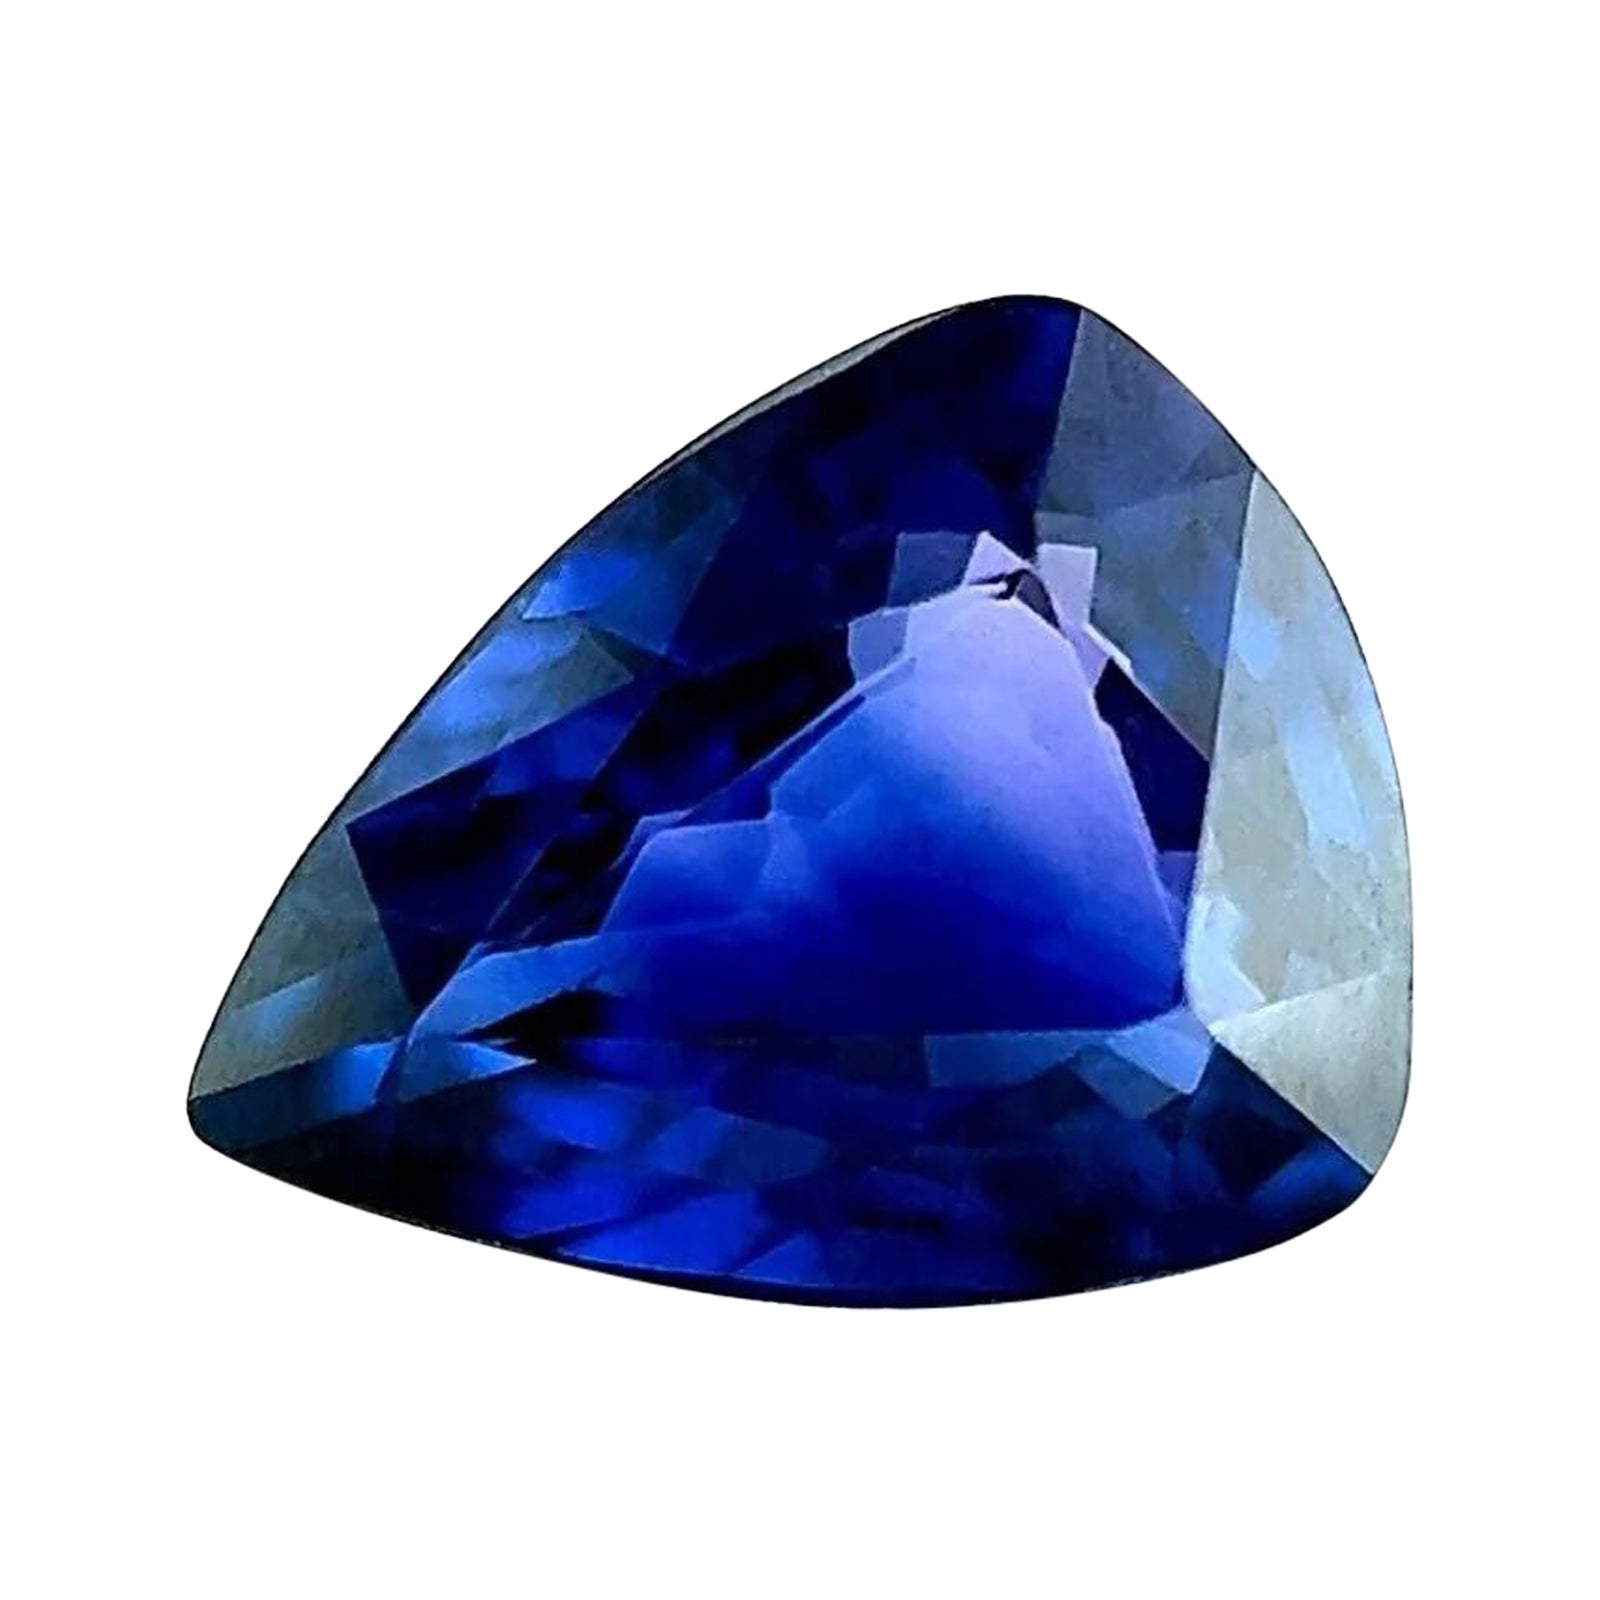 Saphir bleu profond non traité certifié GIA de 1,04 carat, taille poire, pierre précieuse rare de 7,3 x 5,8 mm